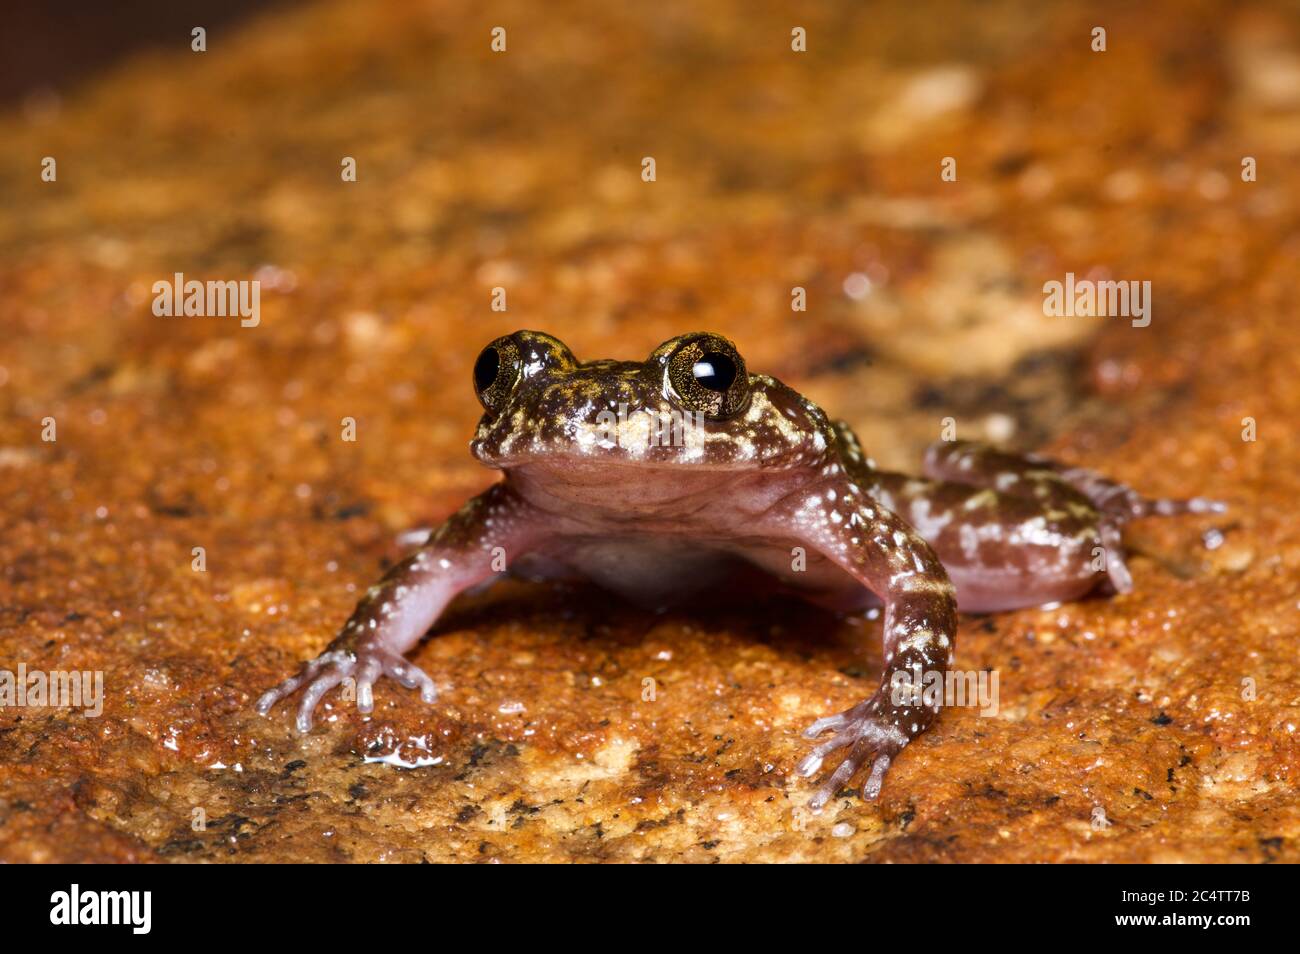 Une grenouille en marbre (Nannophyrys marmorata) en danger critique d'extinction sur une roche humide dans la réserve forestière de Knuckles, au Sri Lanka Banque D'Images